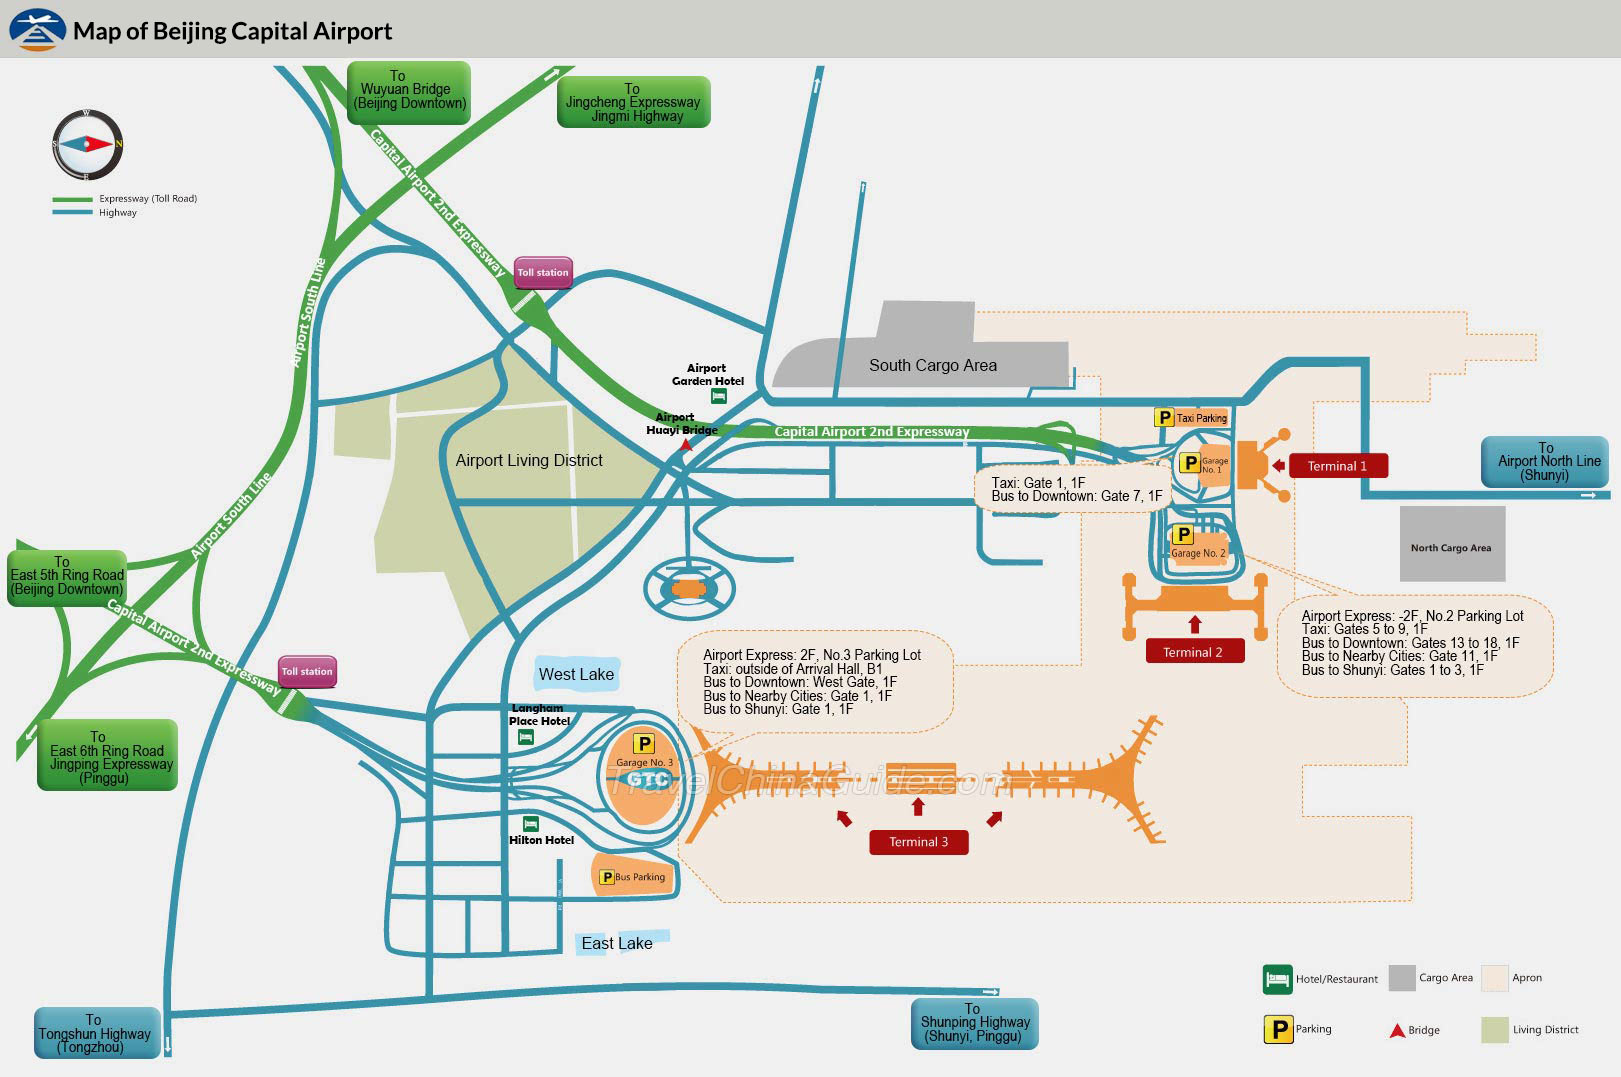 Map Of Beijing Airport Beijing Capital Airport Maps: Terminal 1, 2, 3, Arrival & Departures